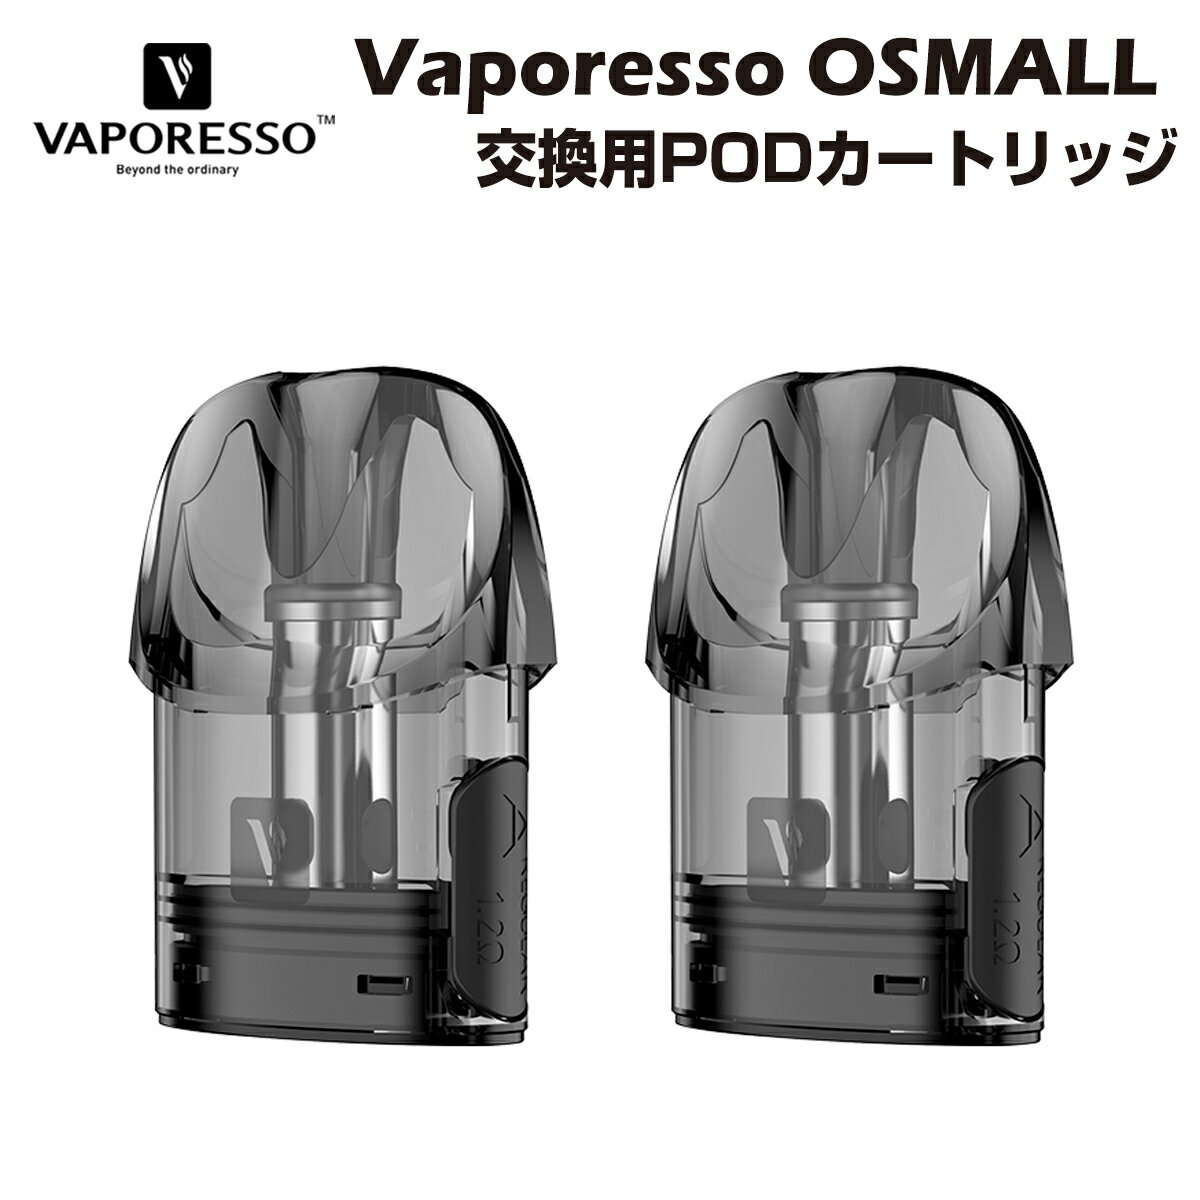 【送料無料】 Vaporesso OSMALL 交換用ポッドカートリッジ 2ml 2個入 ベポレッソ ポッド キット POD 電子タバコ 電子たばこ ベイプ コイル vape